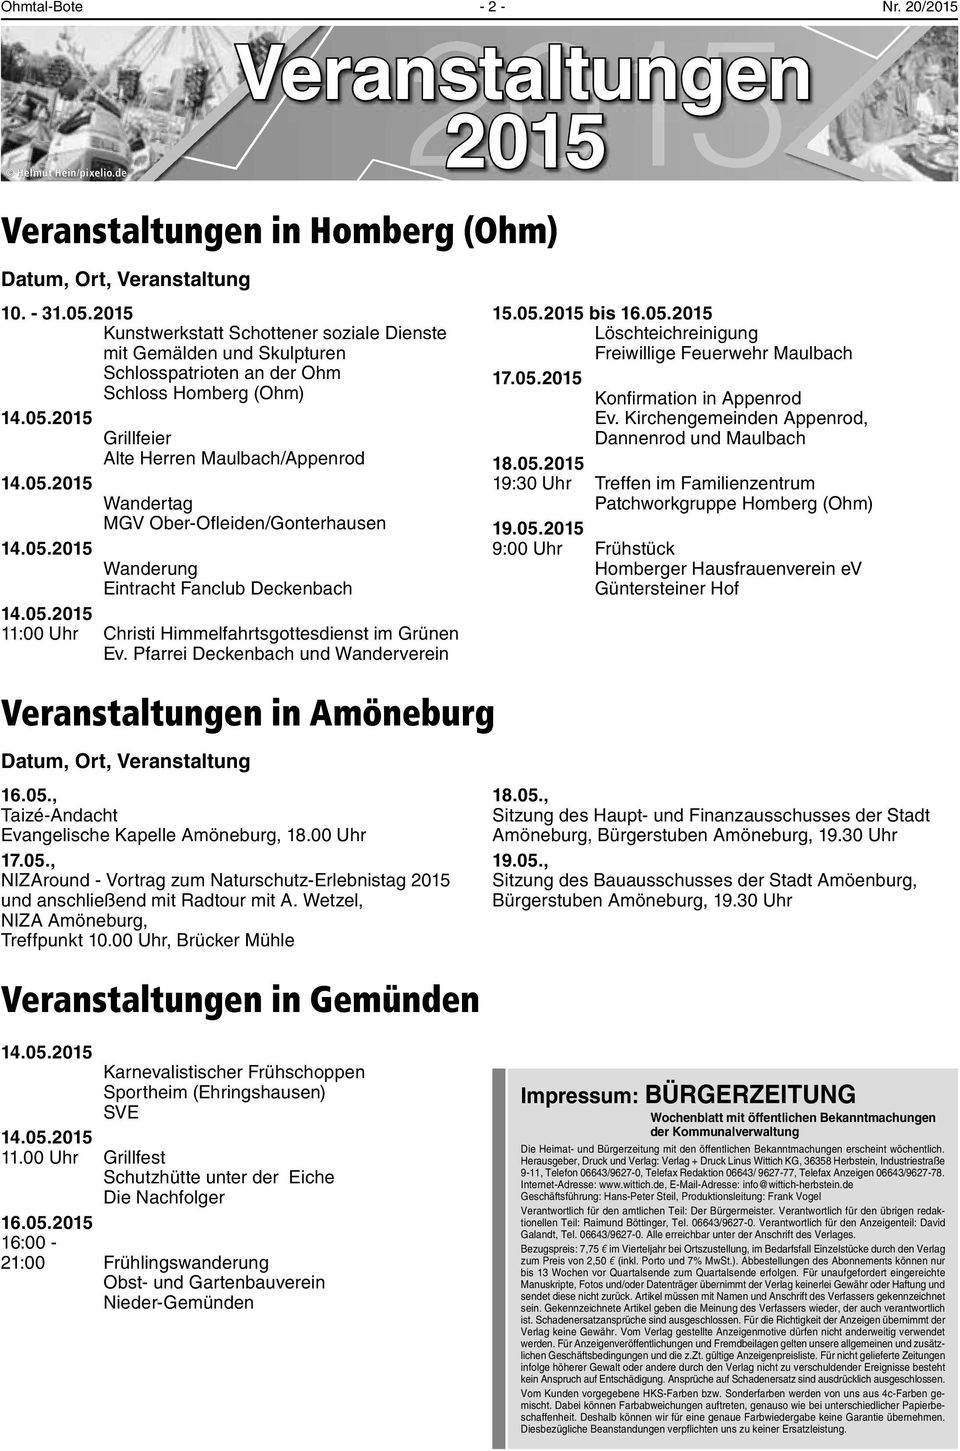 05.2015 Wanderung Eintracht Fanclub Deckenbach 14.05.2015 11:00 Uhr Christi Himmelfahrtsgottesdienst imgrünen Ev.